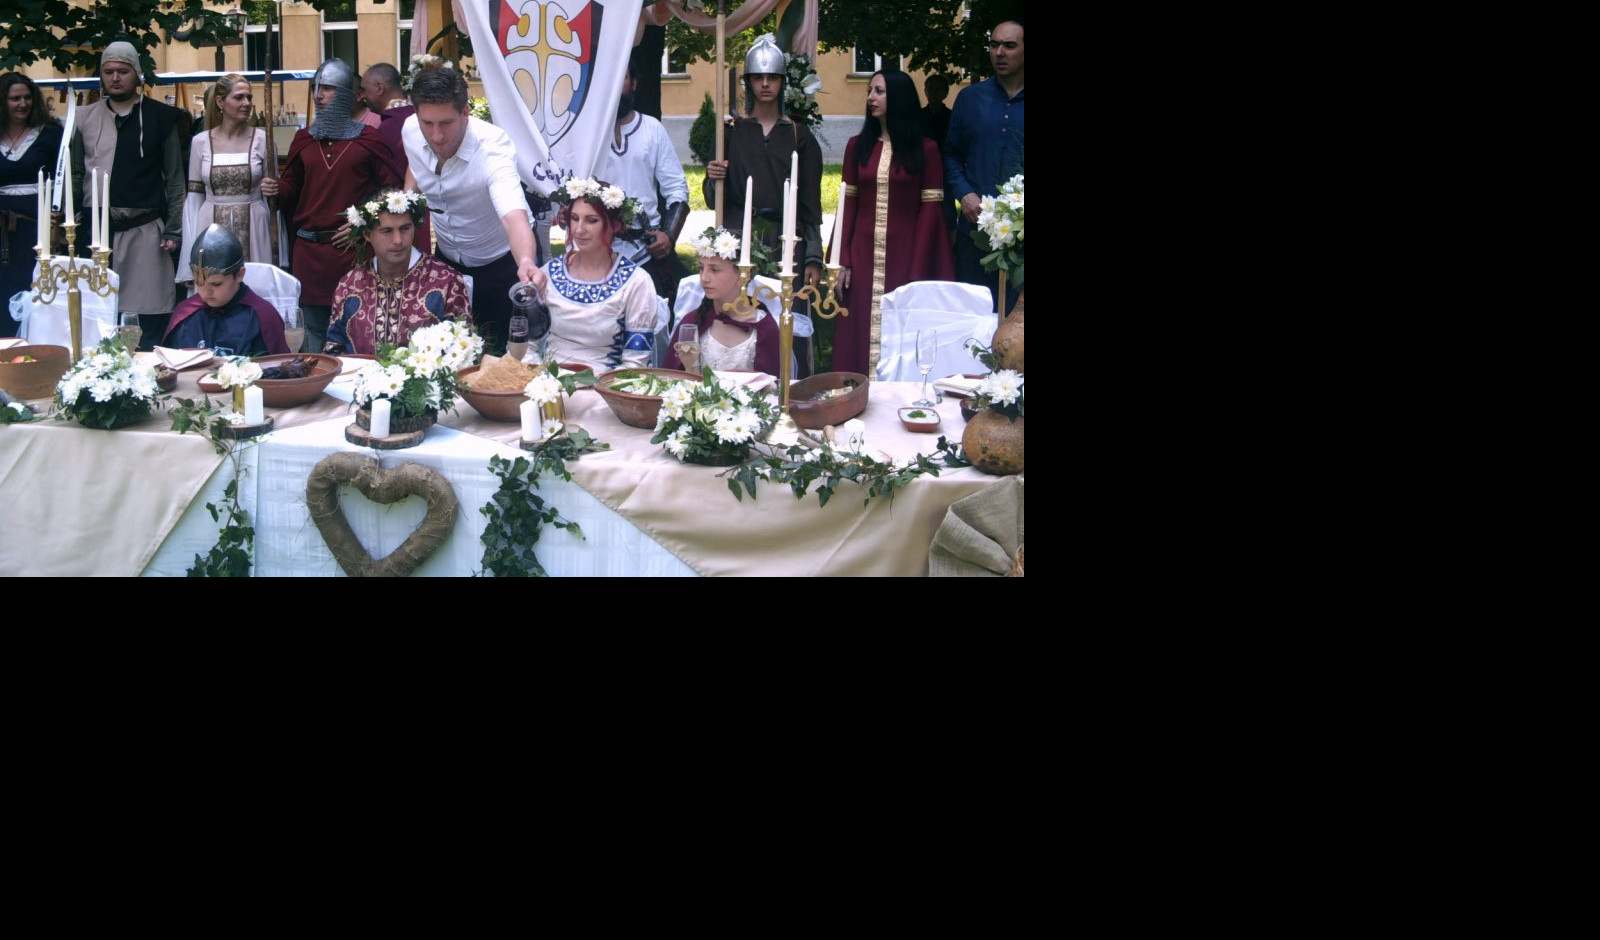 (FOTO) SPEKTAKL U KRUŠEVCU! Srednjevekovno venčanje u Lazarevom gradu!